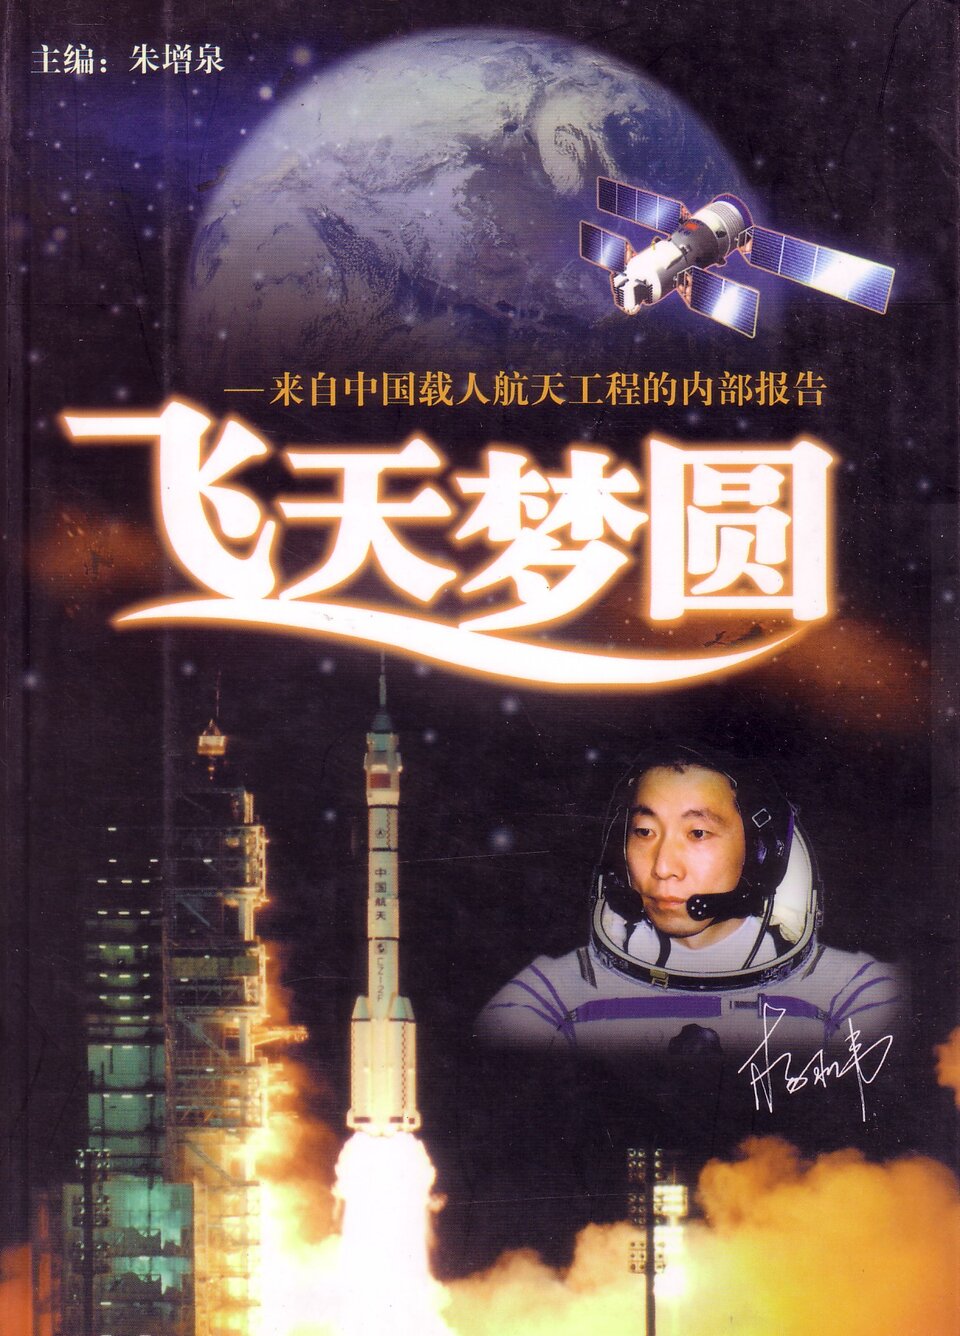 Yang Liwei, die de eerste bemande Shenzhou-missie uitvoerde in 2003